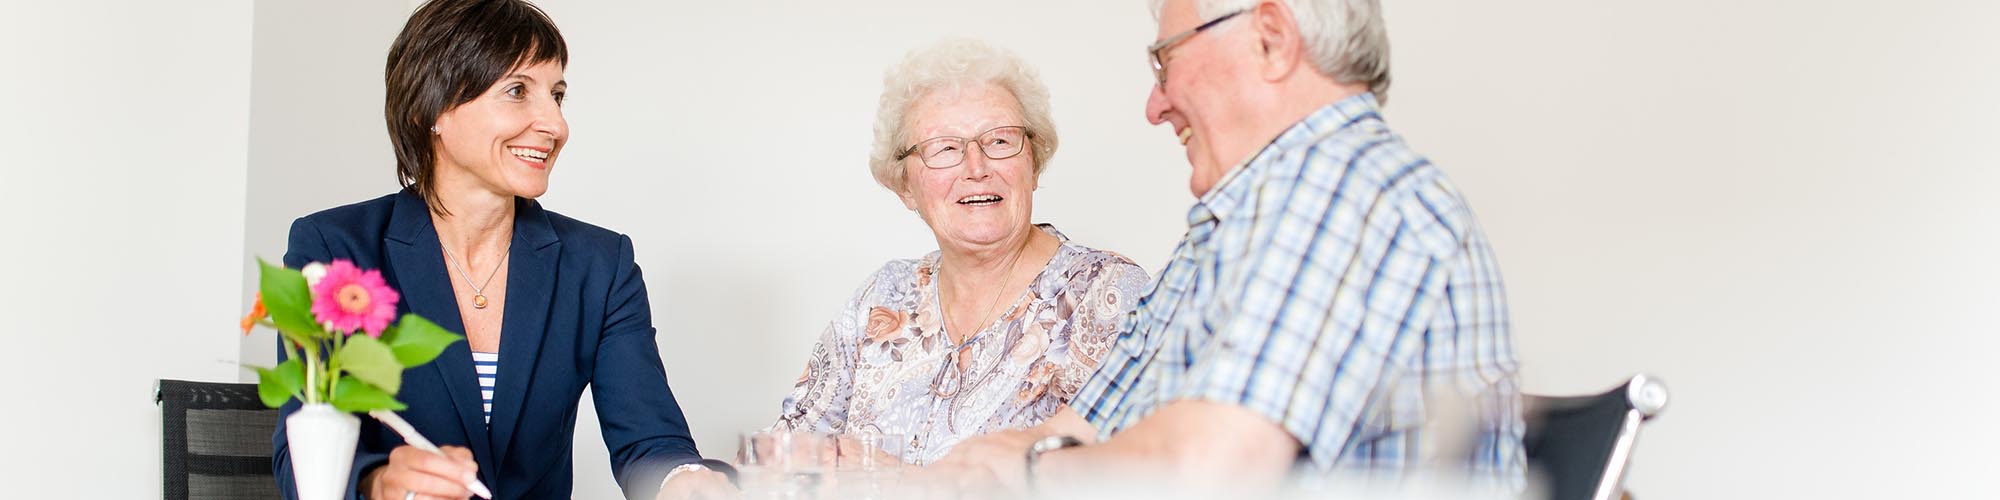 Ein Senior freut sich über die Pflege im eigenen Zuhause